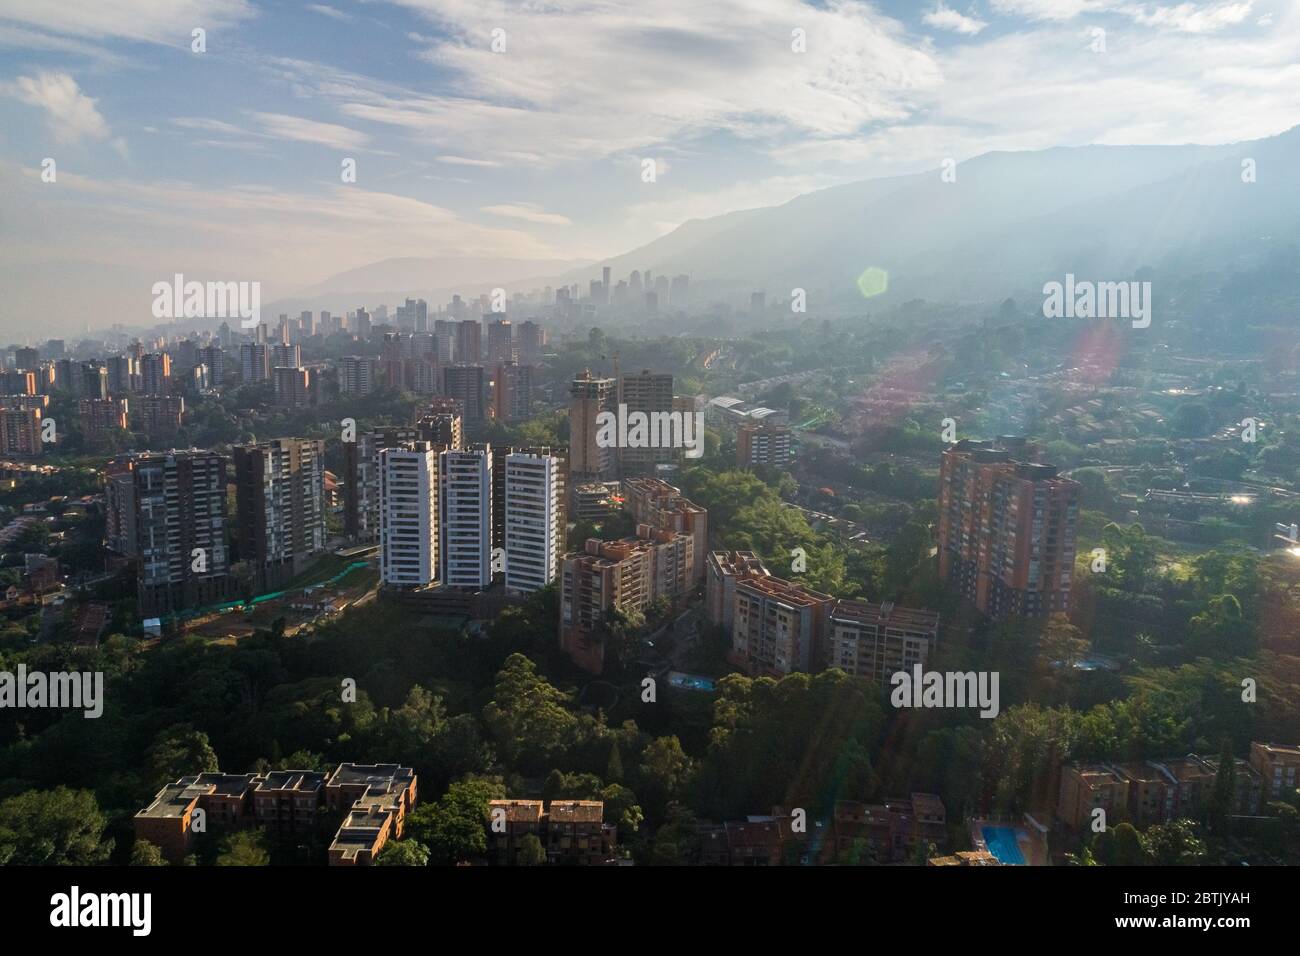 Vista aérea de una ciudad muy poblada durante el amanecer de la mañana Foto de stock